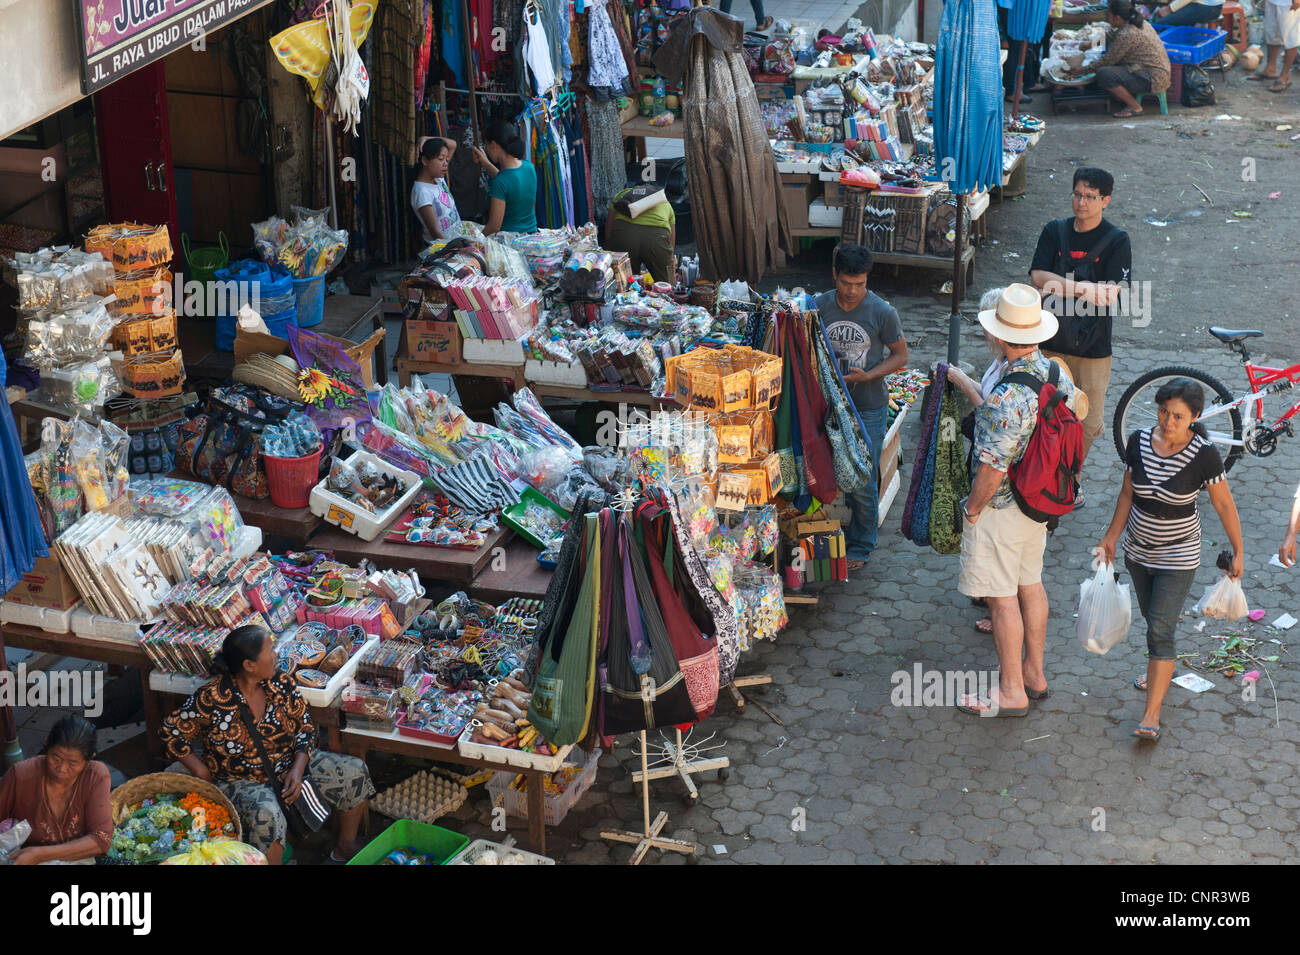 El ocupado, el colorido mercado de Ubud, Bali vende casi todo lo que se pueda desear. Alimentos, ropa, piezas de arte, y baratijas. Foto de stock